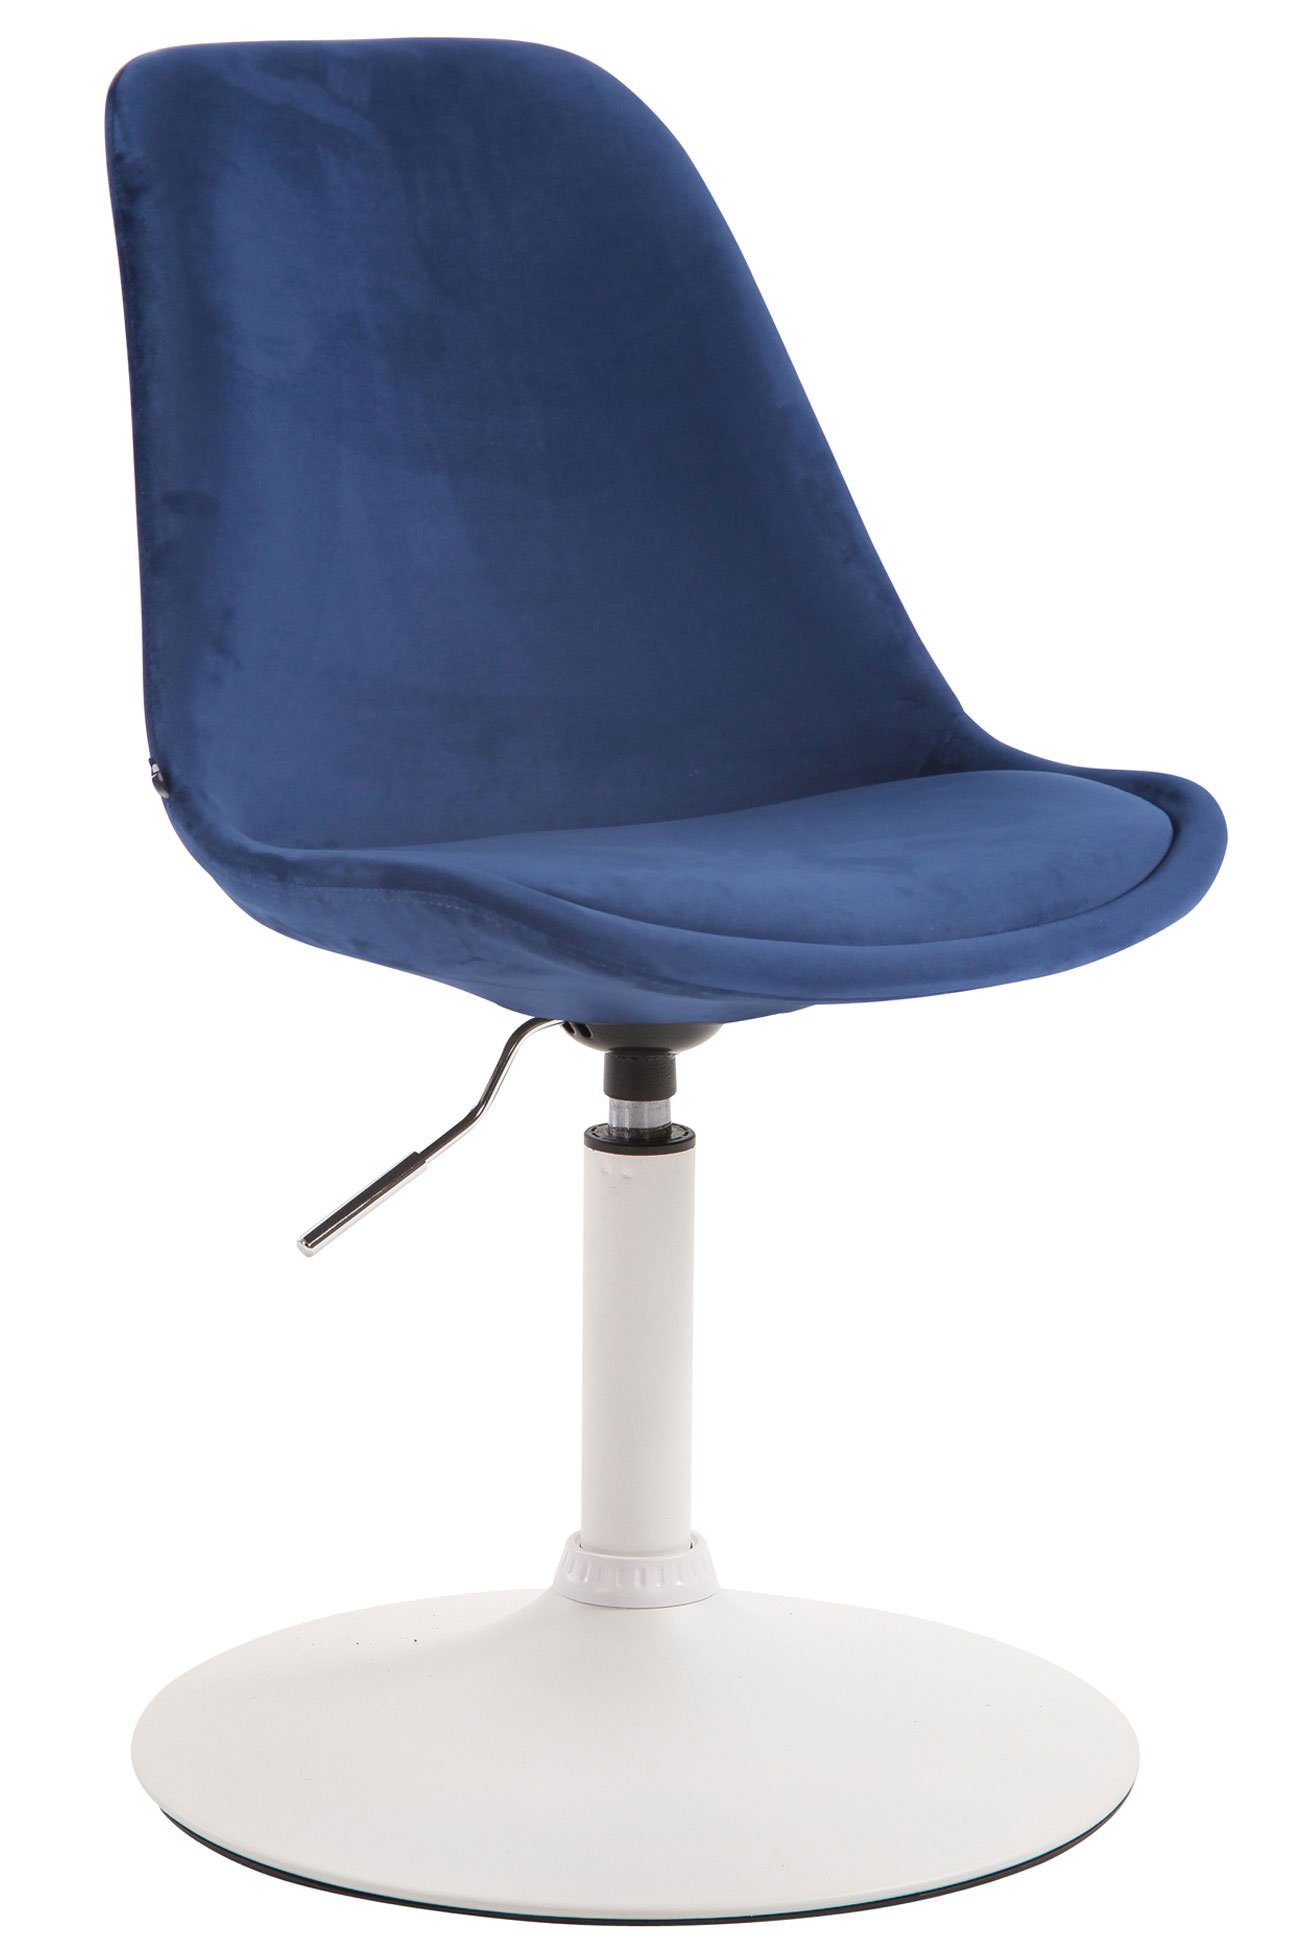 TPFLiving Esszimmerstuhl Mavic mit hochwertig gepolsterter Sitzfläche - Konferenzstuhl (Küchenstuhl - Esstischstuhl - Wohnzimmerstuhl - Polsterstuhl), Gestell: Metall weiß - Sitzfläche: Samt blau